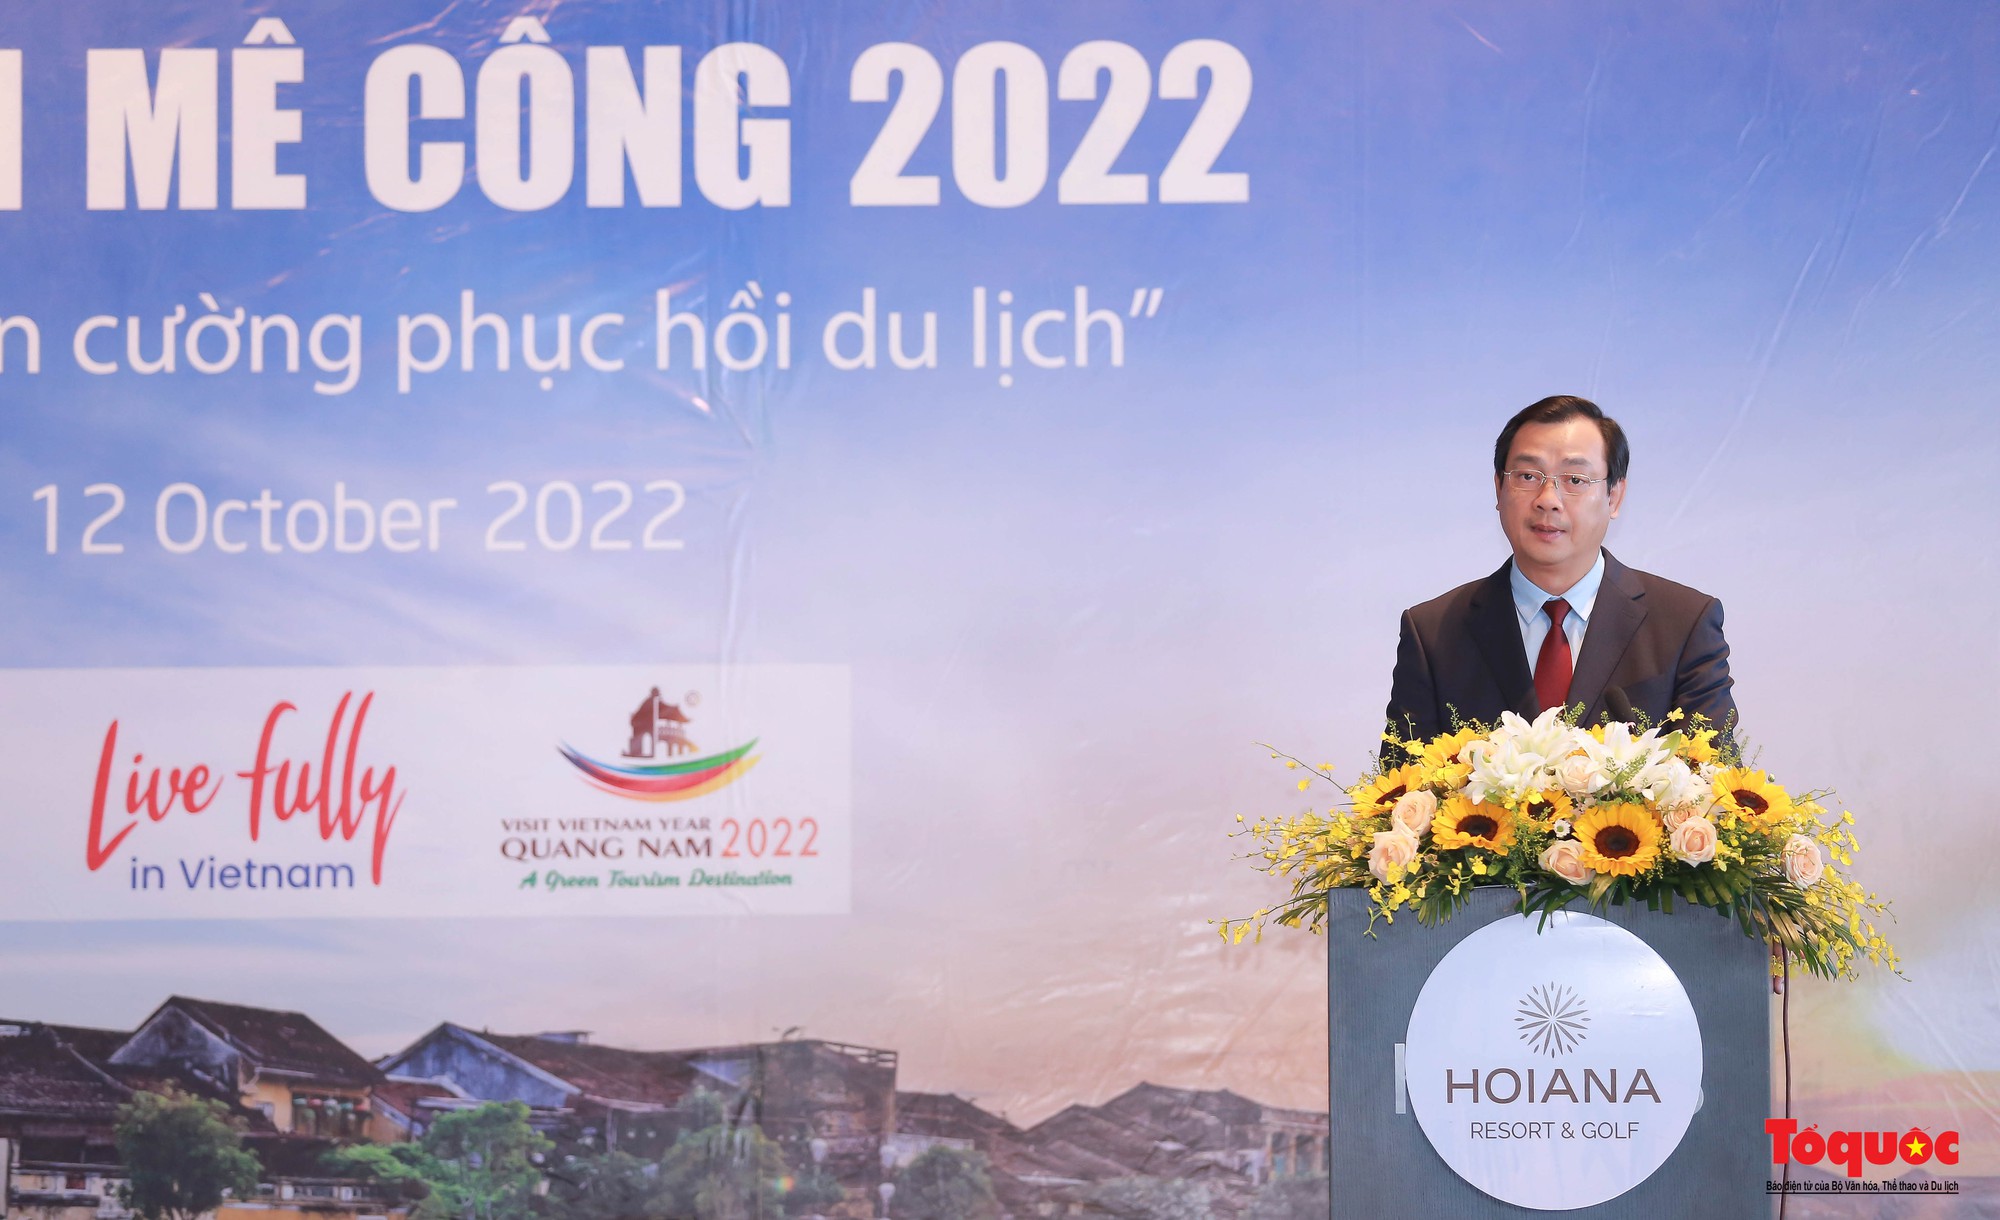 Khai mạc Diễn đàn Du lịch Mê Công 2022: Cùng nhau hành động, hướng tới mục tiêu phục hồi ngành du lịch Mê Công - Ảnh 2.